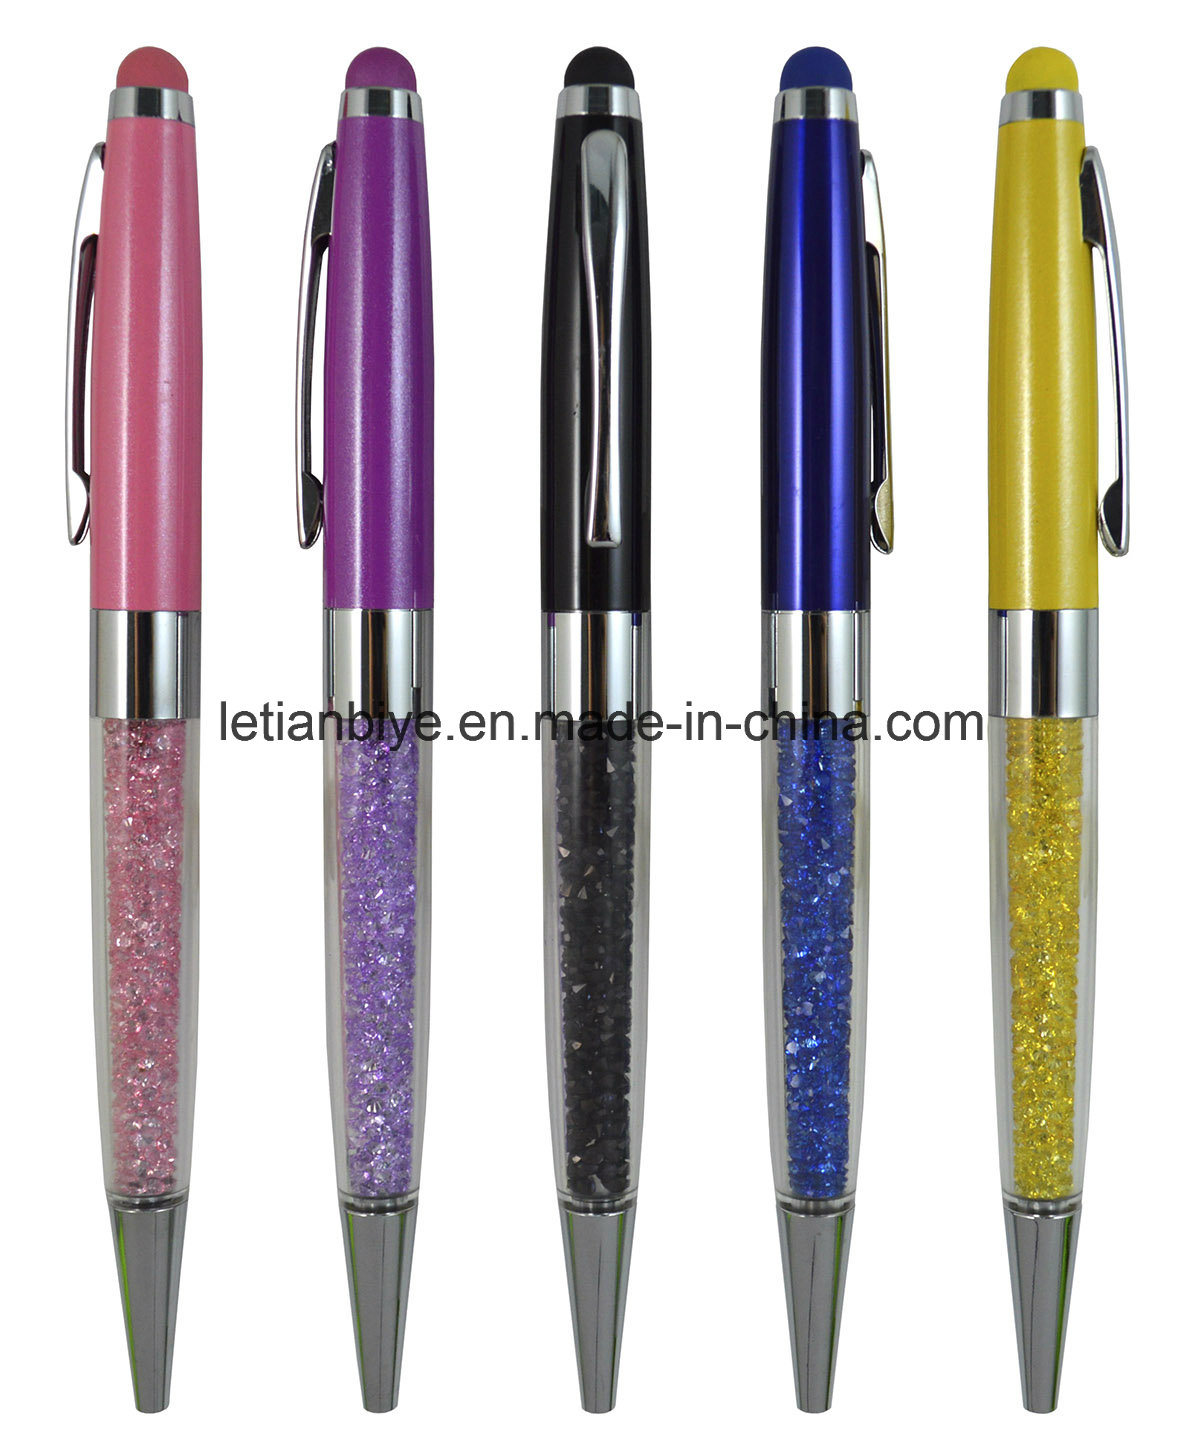 Swarovski Style Crystal Stylus Pen (LT-C808)